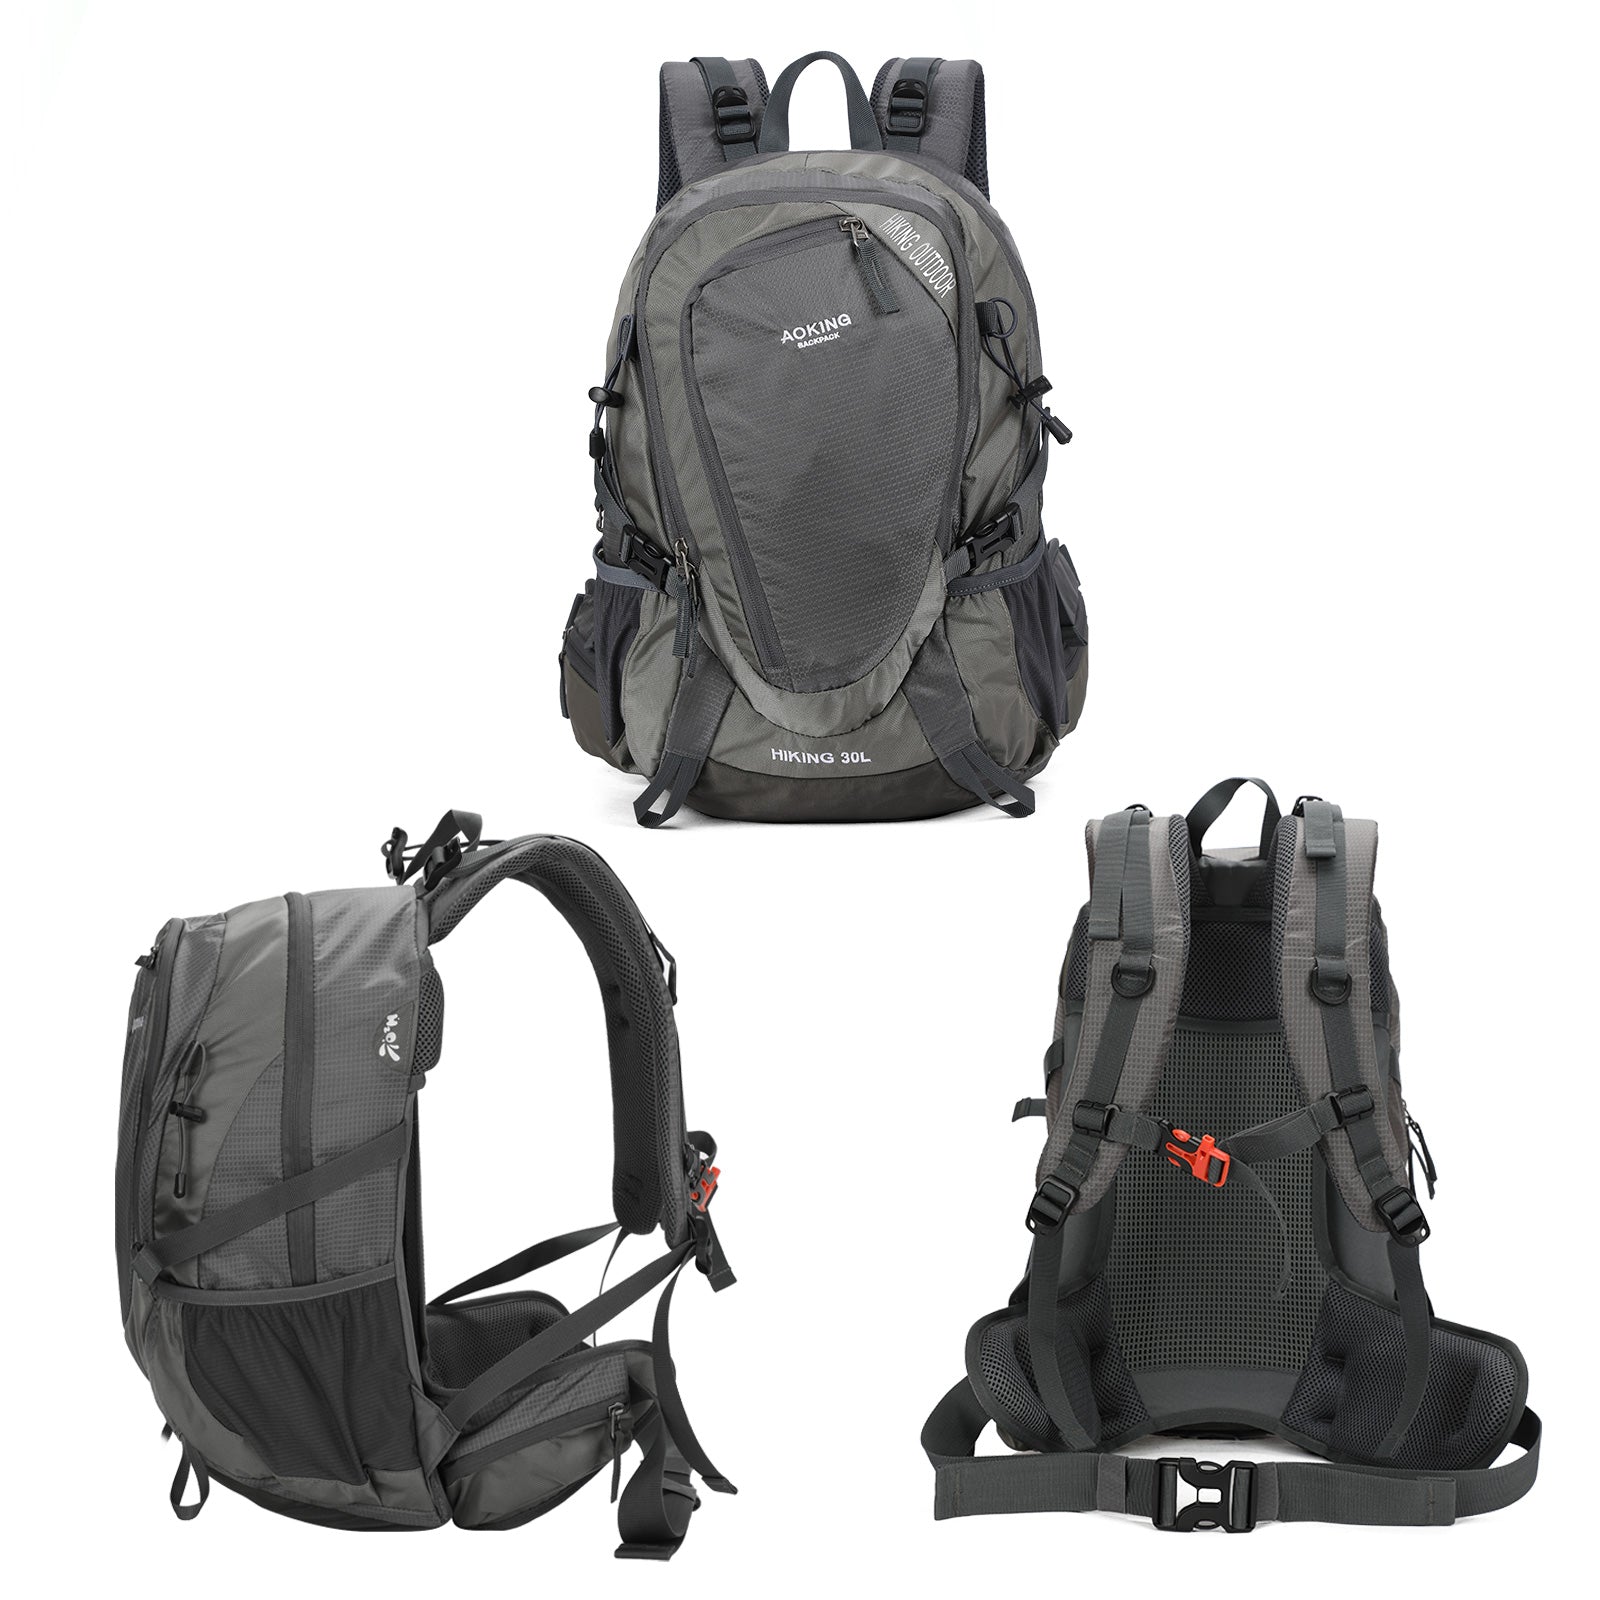 Aoking Backpack Large Capacity Casual Backpack Waterpoor Outdoor Bag YJN67752